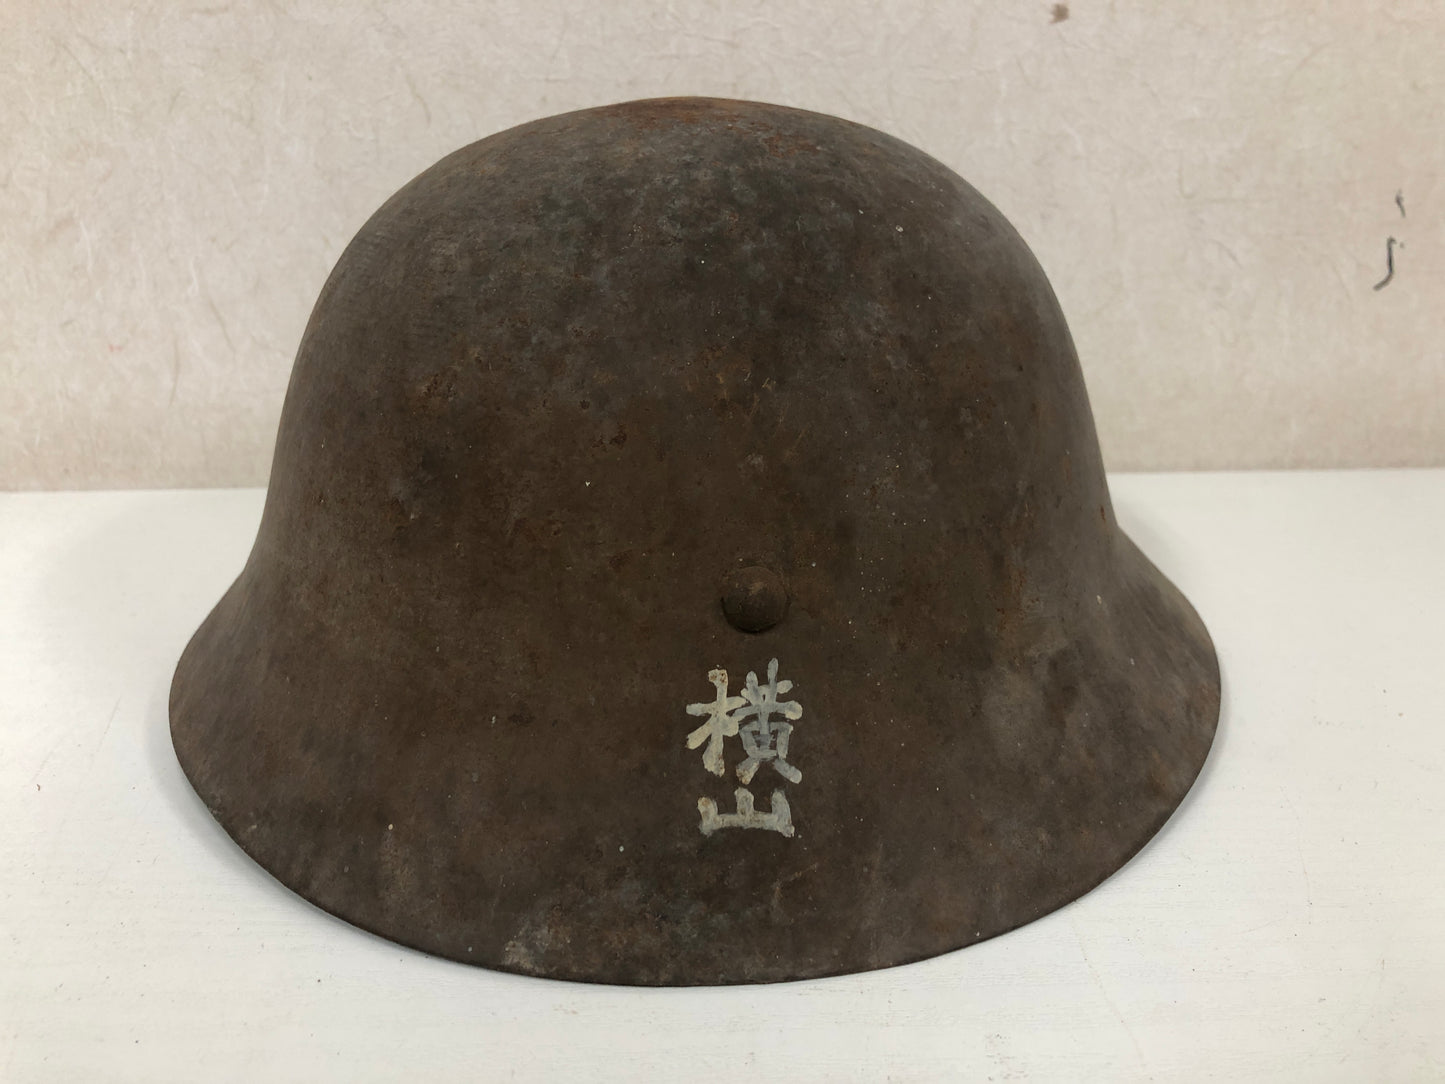 Y4065 Imperial Japan Army Iron Helmet Gaiters Bag set military Japan WW2 vintage